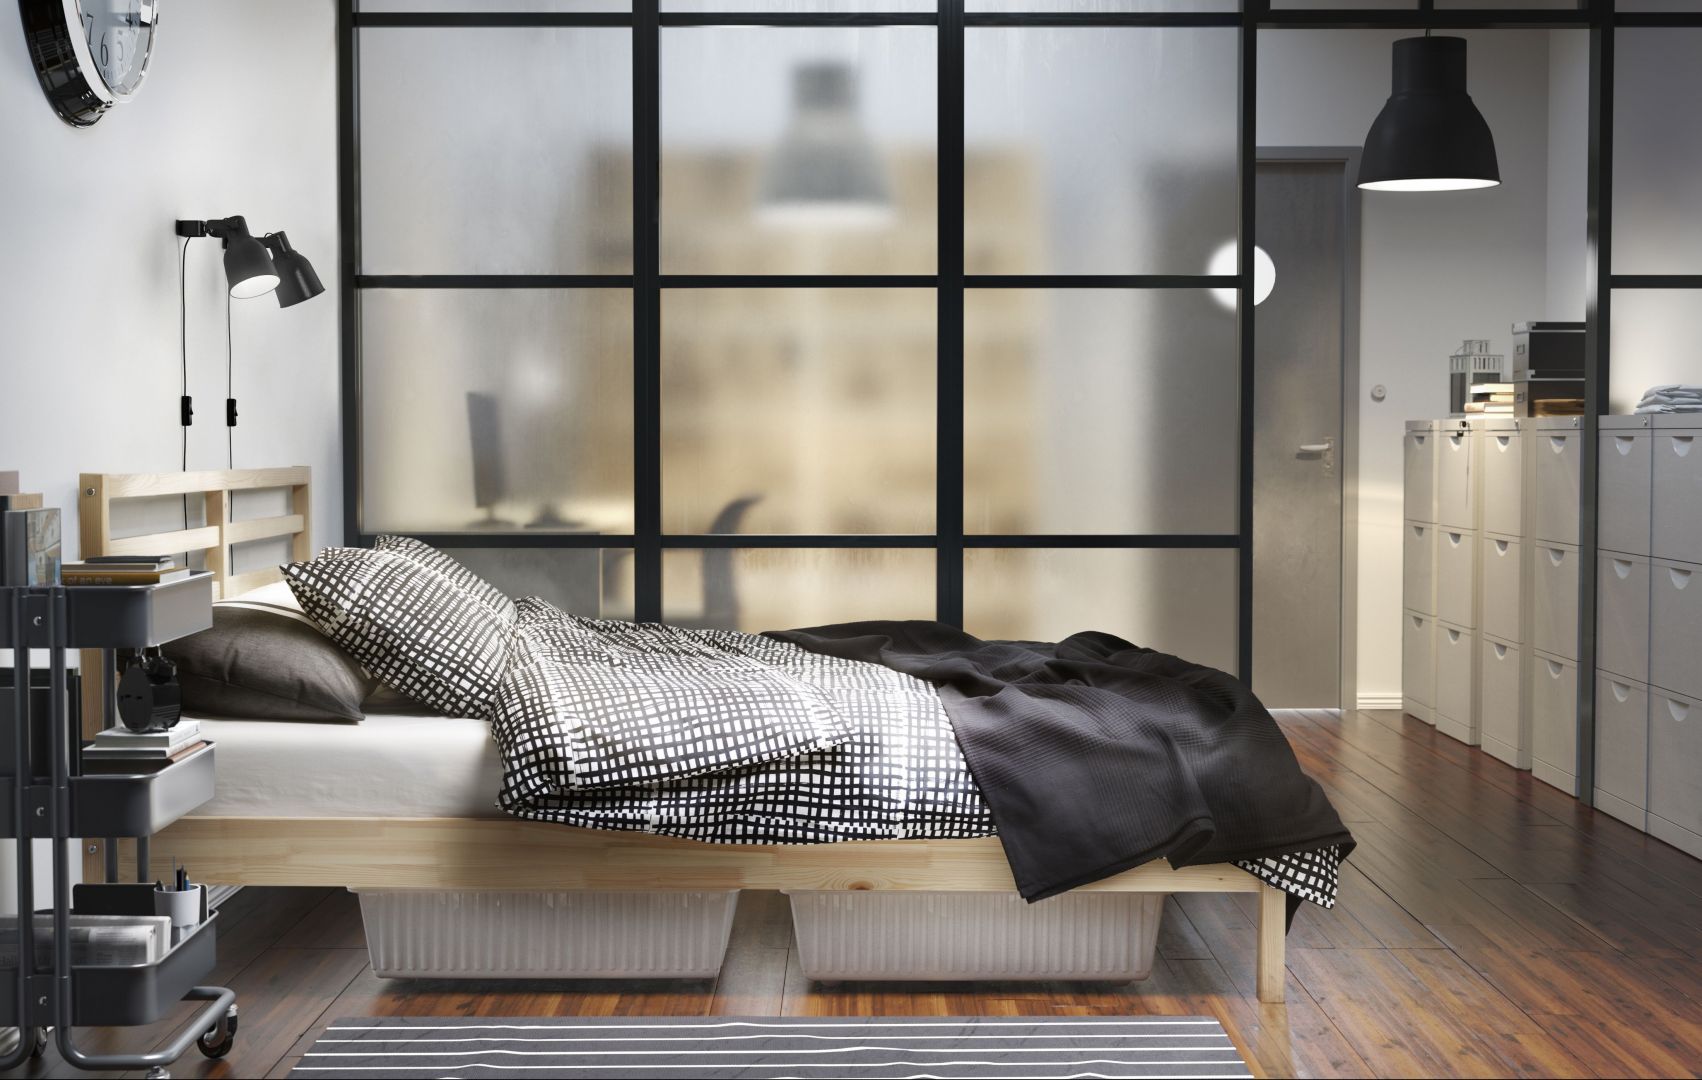 Łóżko Tarva, marki IKEA. Produkt wykonany z litego drewna - wytrzymałego, ciepłego, naturalnego materiału.
Fot. IKEA